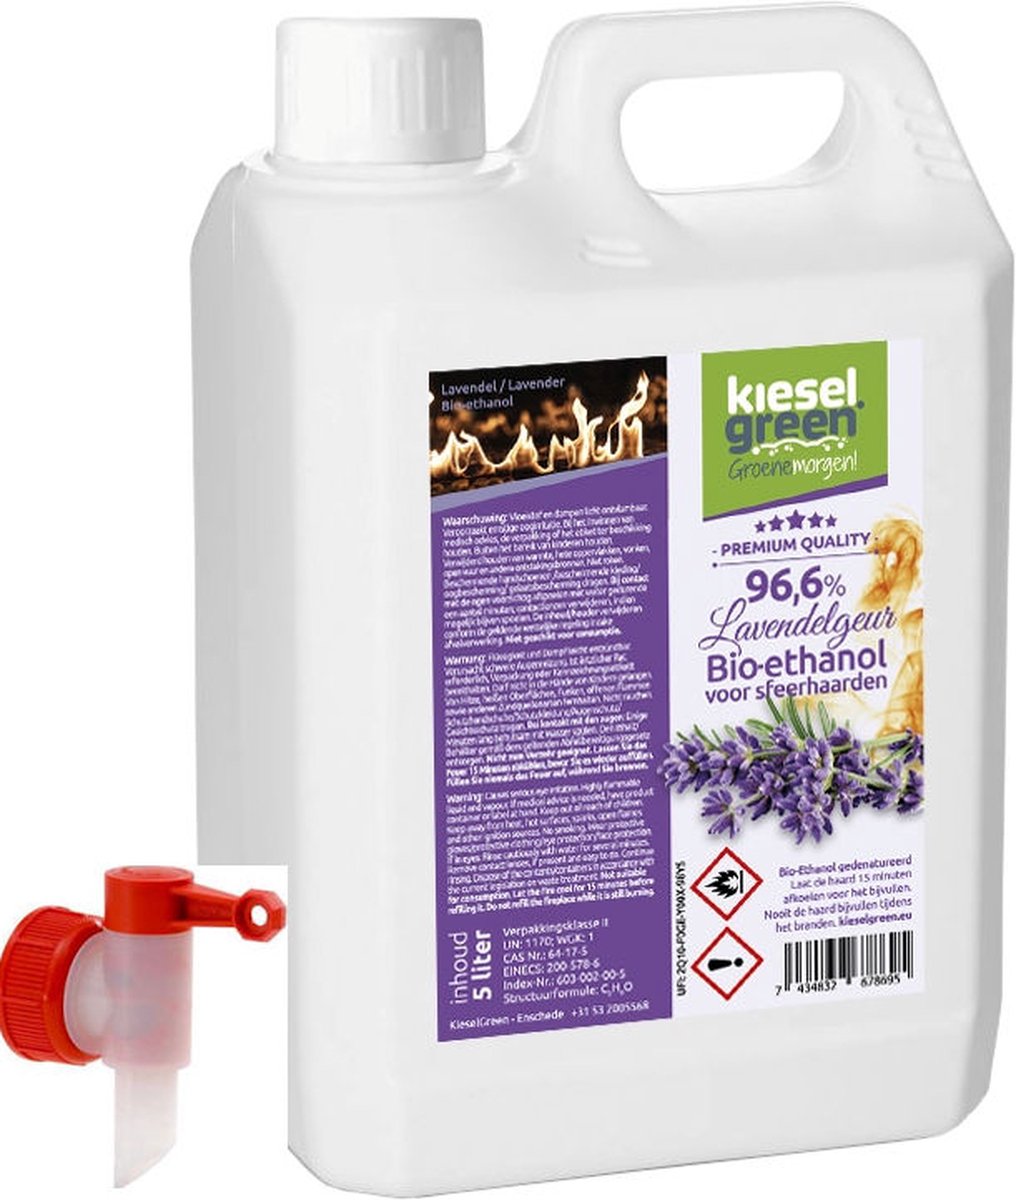 KieselGreen 5 Liter Bio-Ethanol met Lavendel Aroma - Bioethanol 96.6%, Veilig voor Sfeerhaarden en Tafelhaarden, Milieuvriendelijk - Premium Kwaliteit Ethanol voor Binnen en Buiten